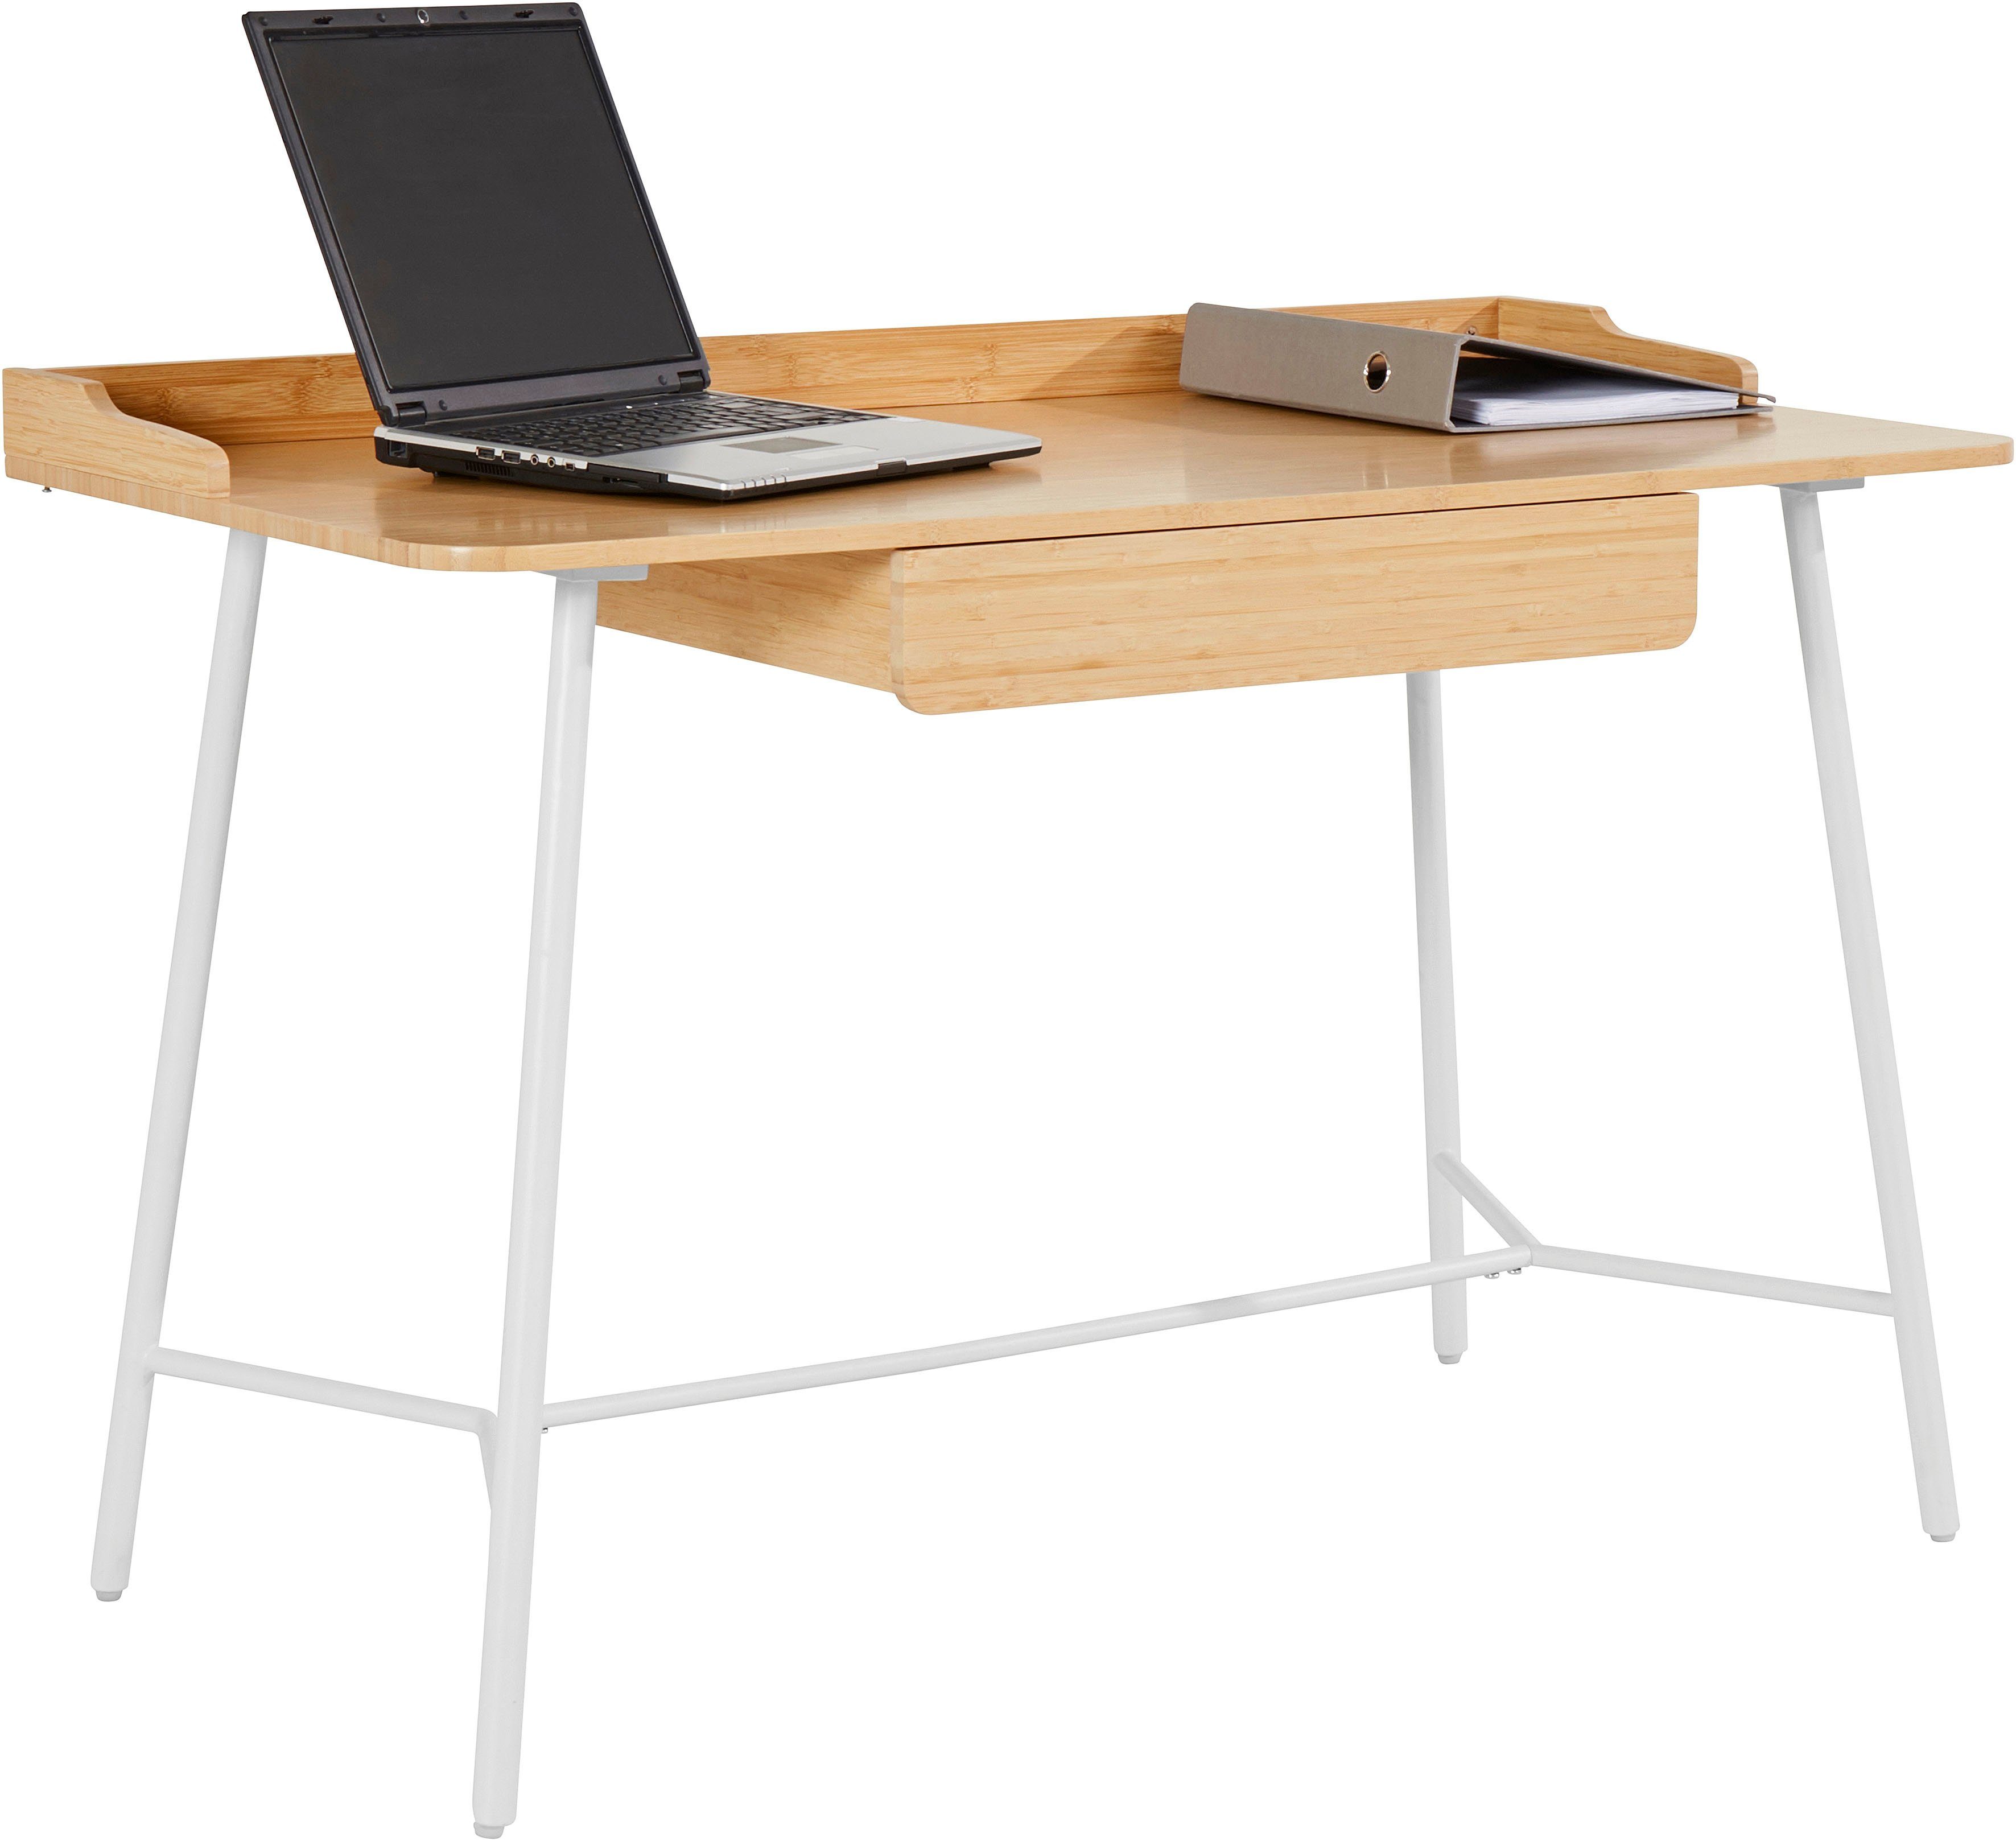 Schreibtisch Bambus nachhaltig by Tischplatte Home Sanja, Lena Gercke mit LeGer